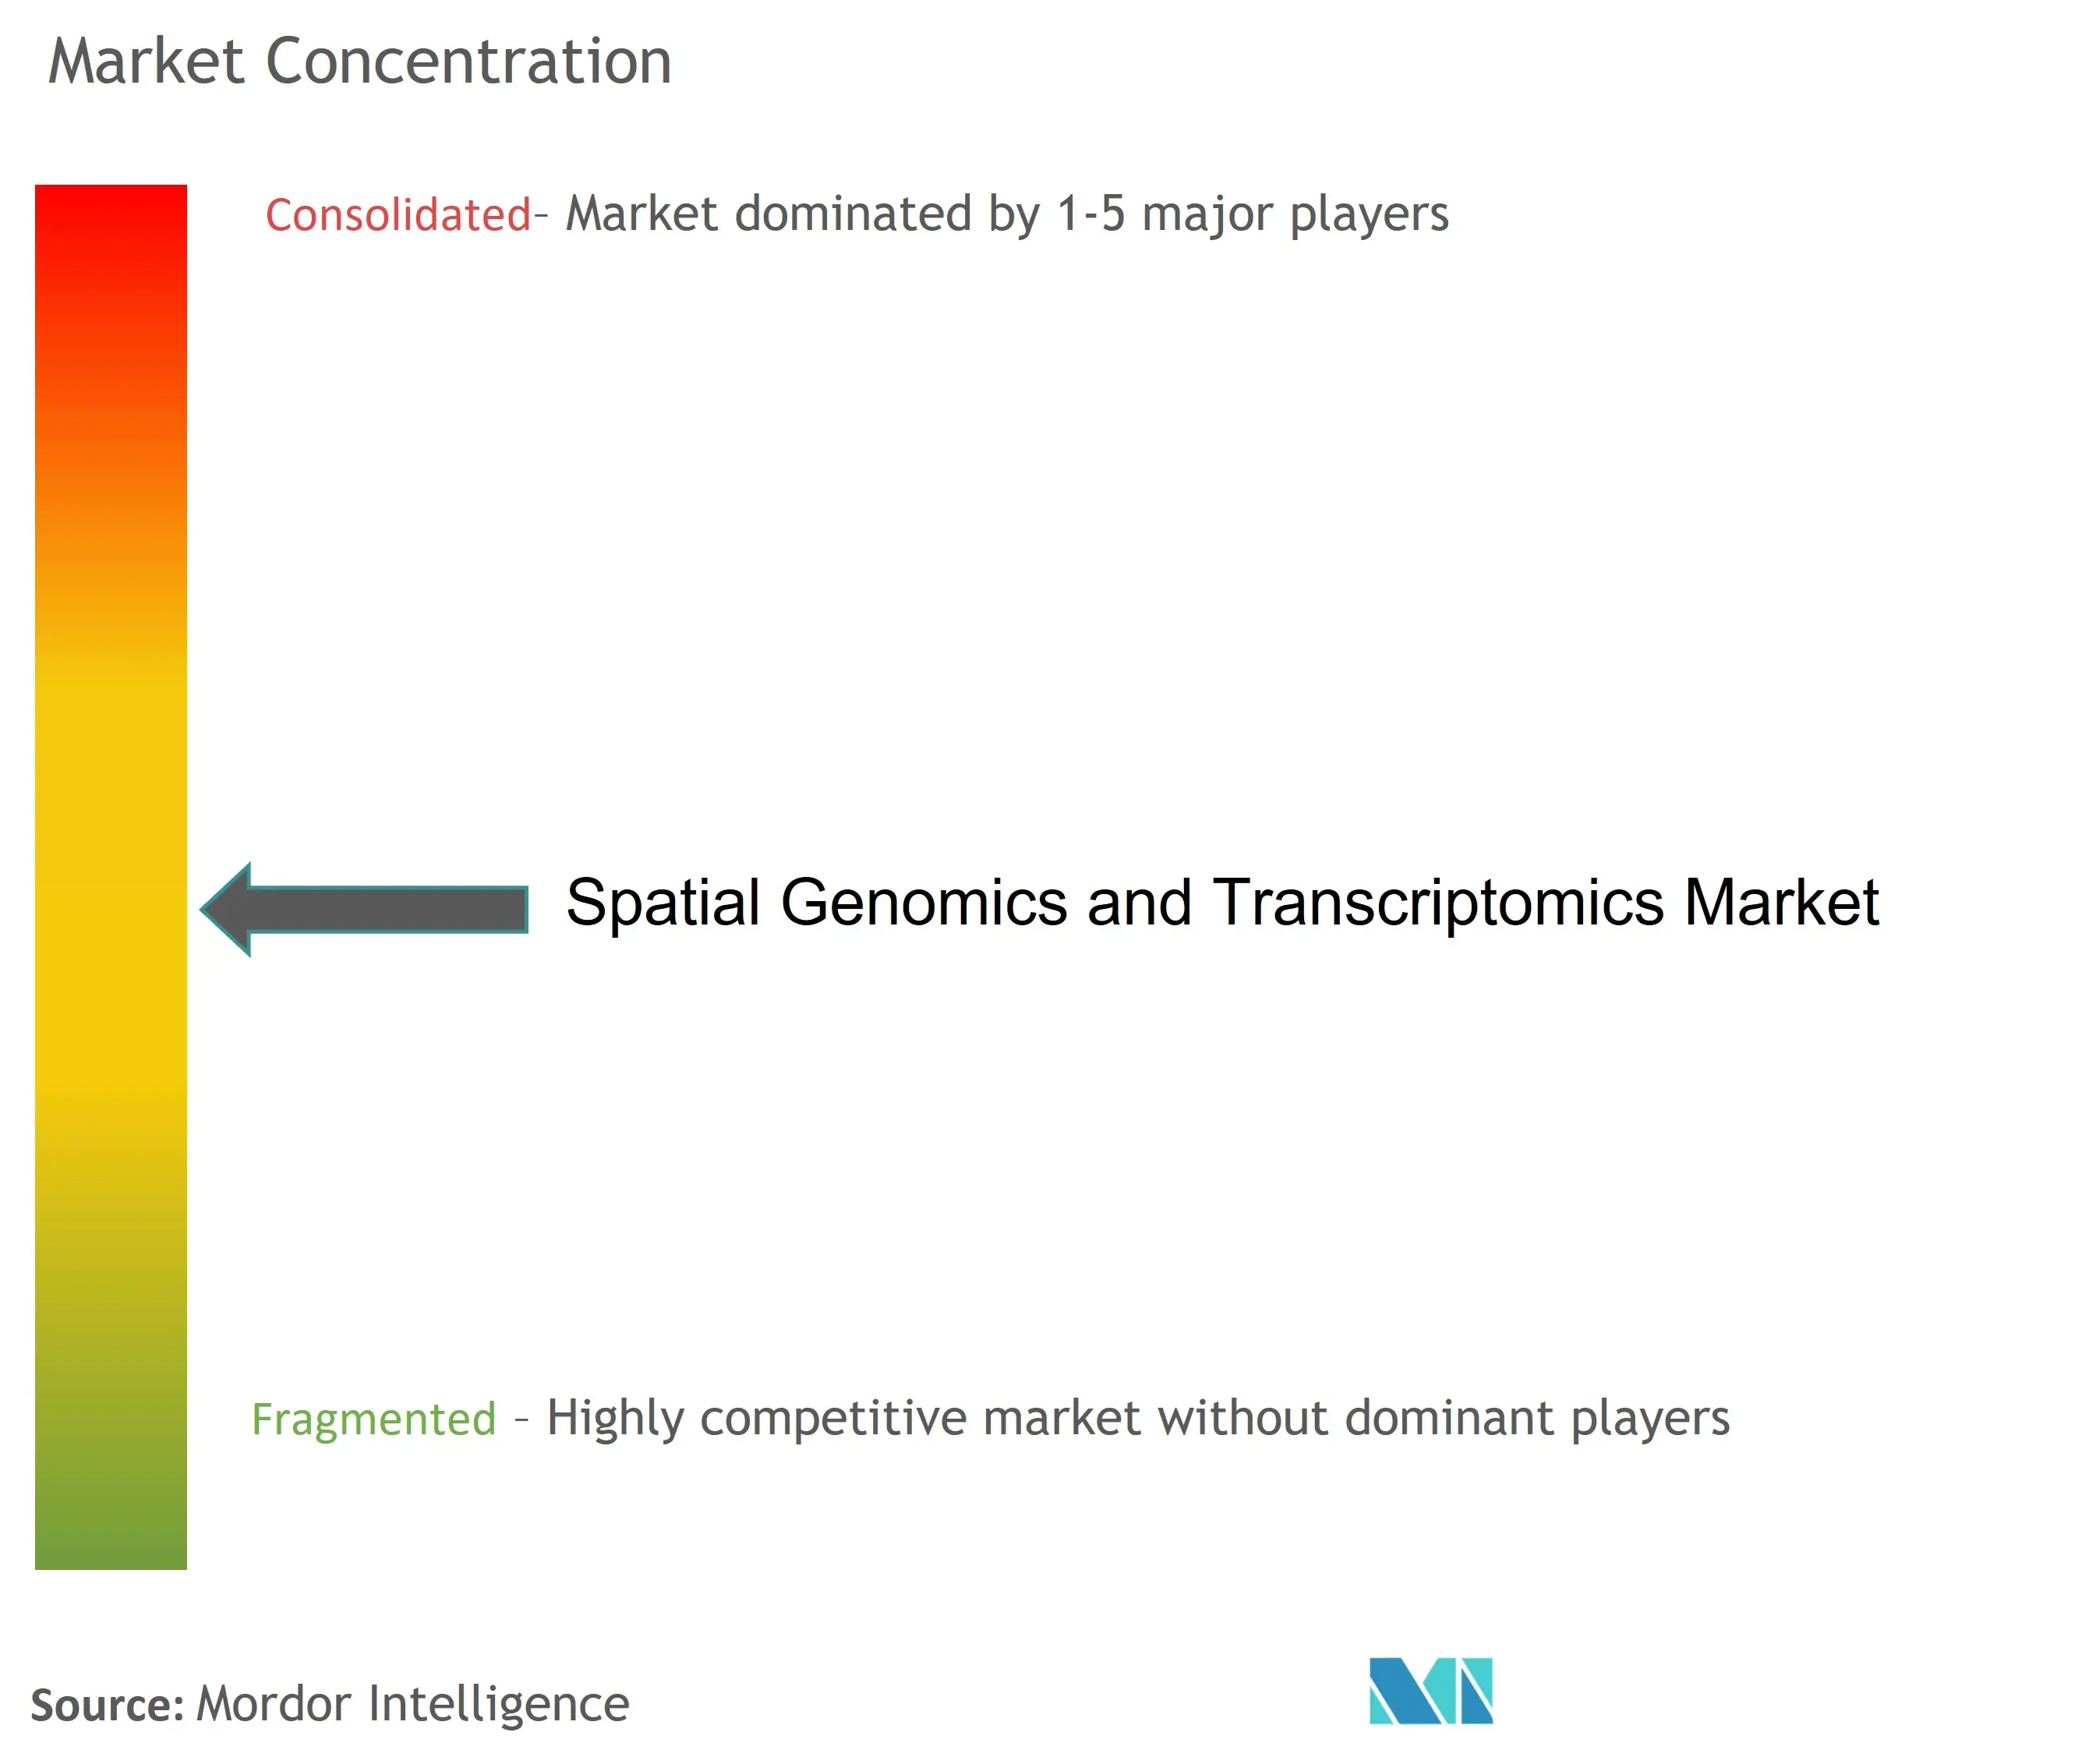 空间基因组学和转录组学市场集中度